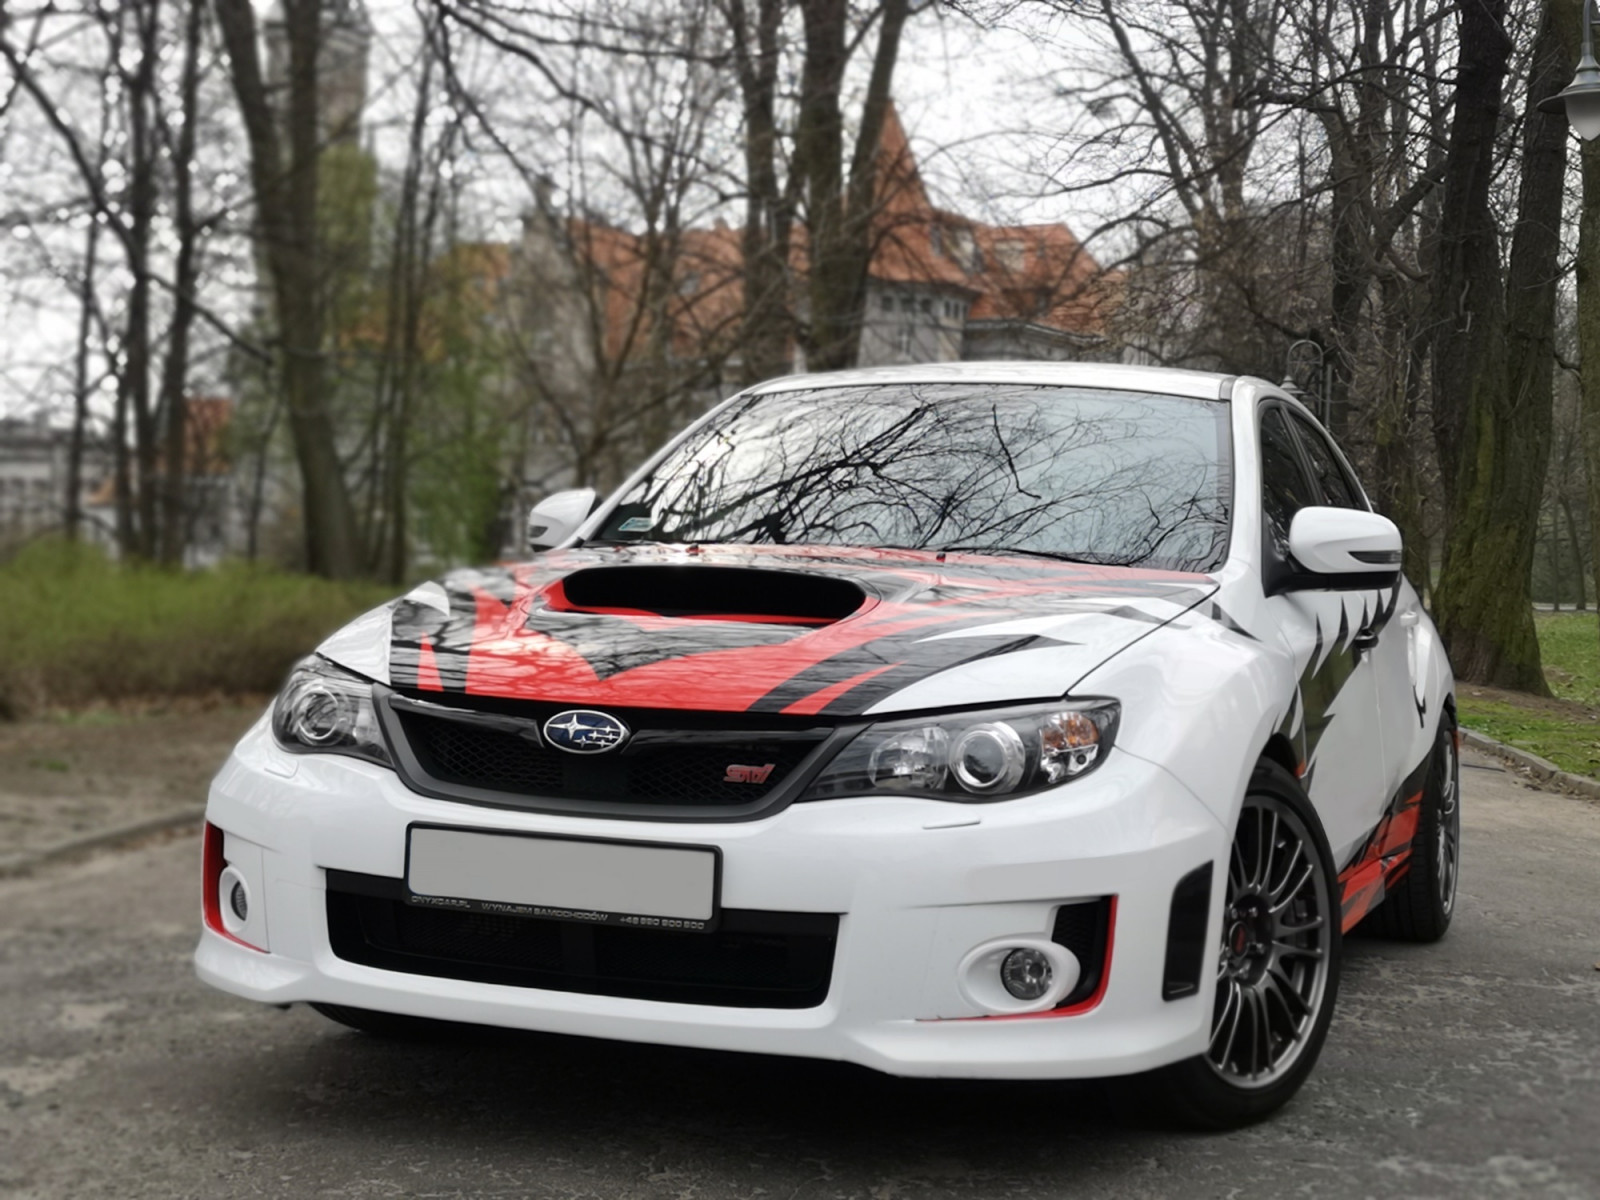 Jazda Subaru Impreza W Opolu – Prezentmarzeń